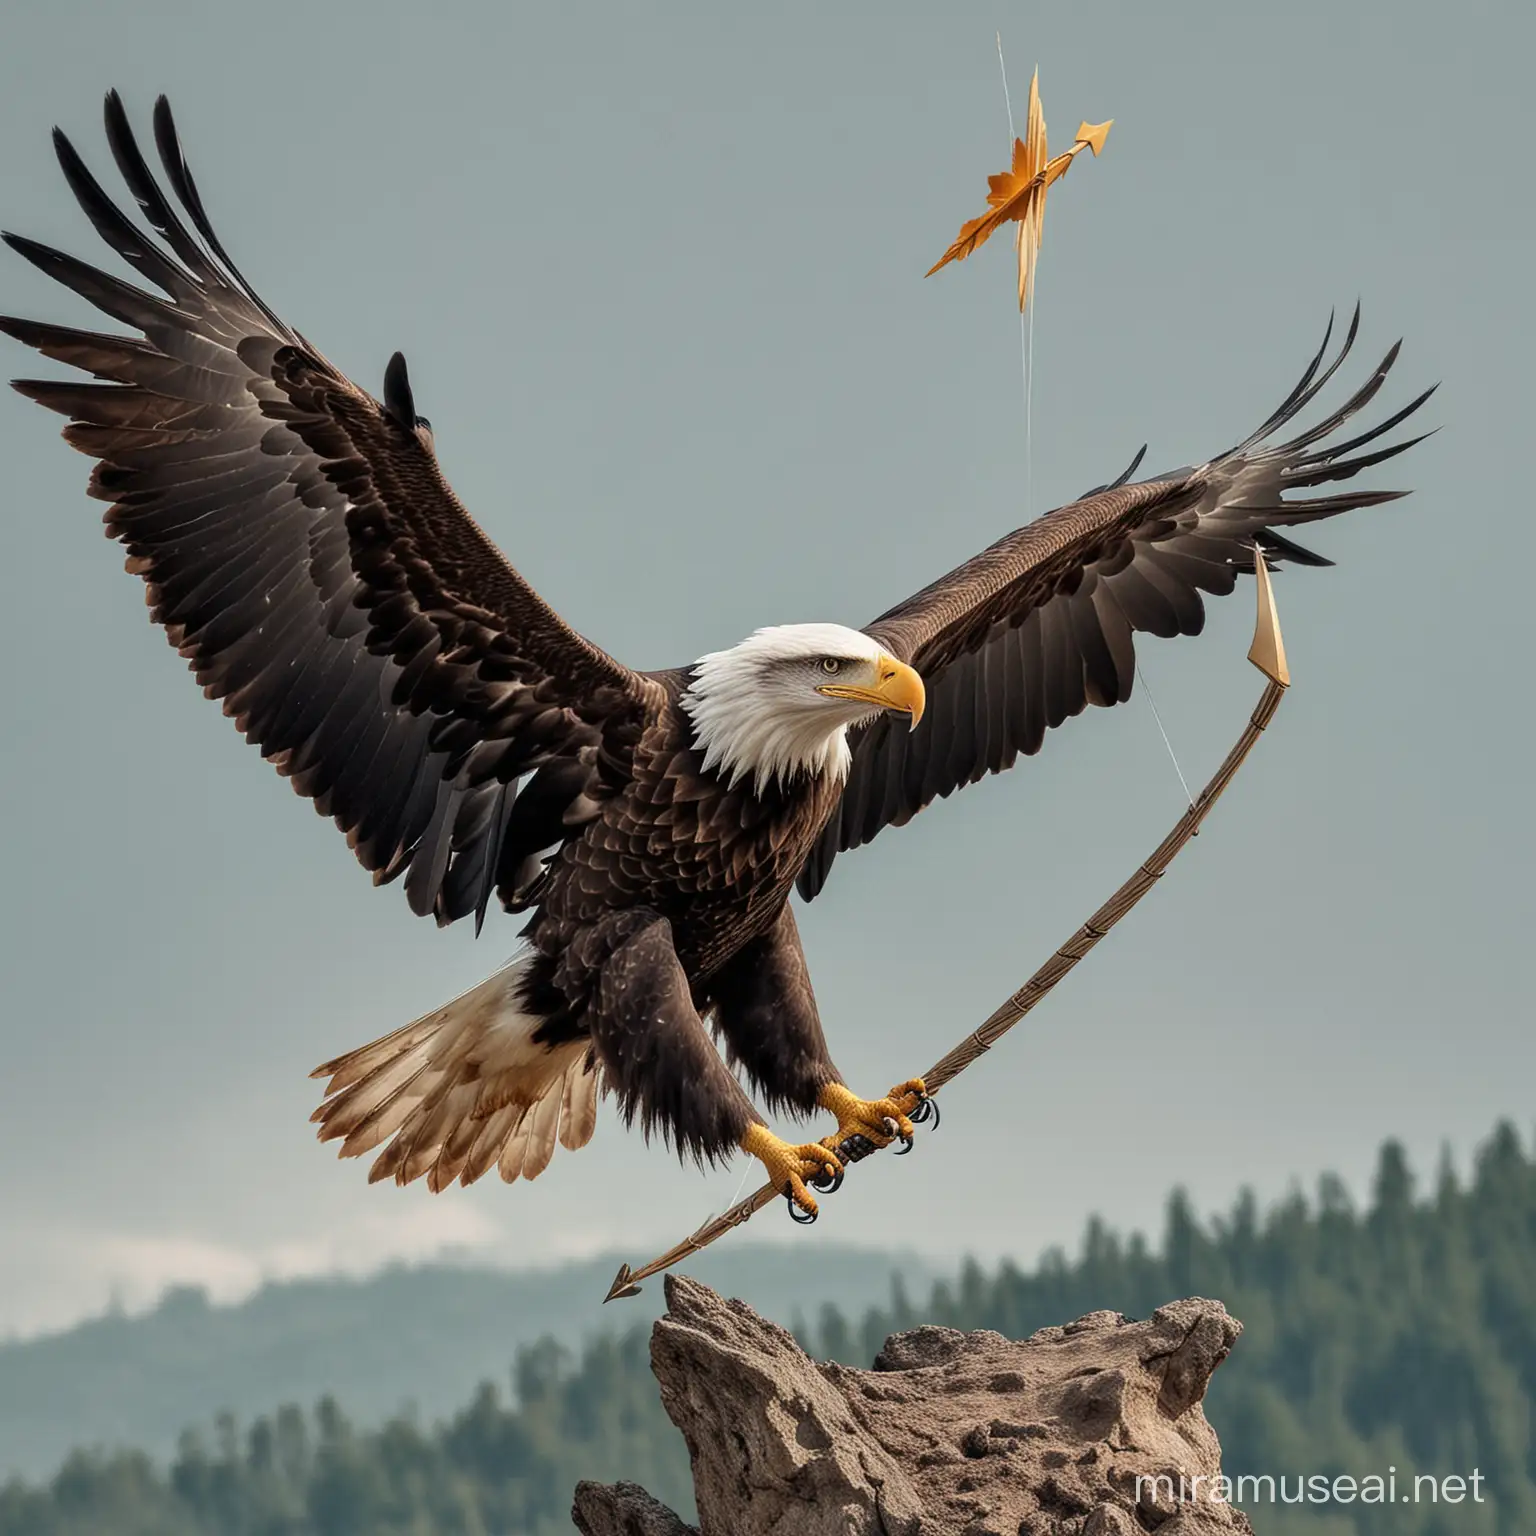 An eagle rising with an arrow ⬆️